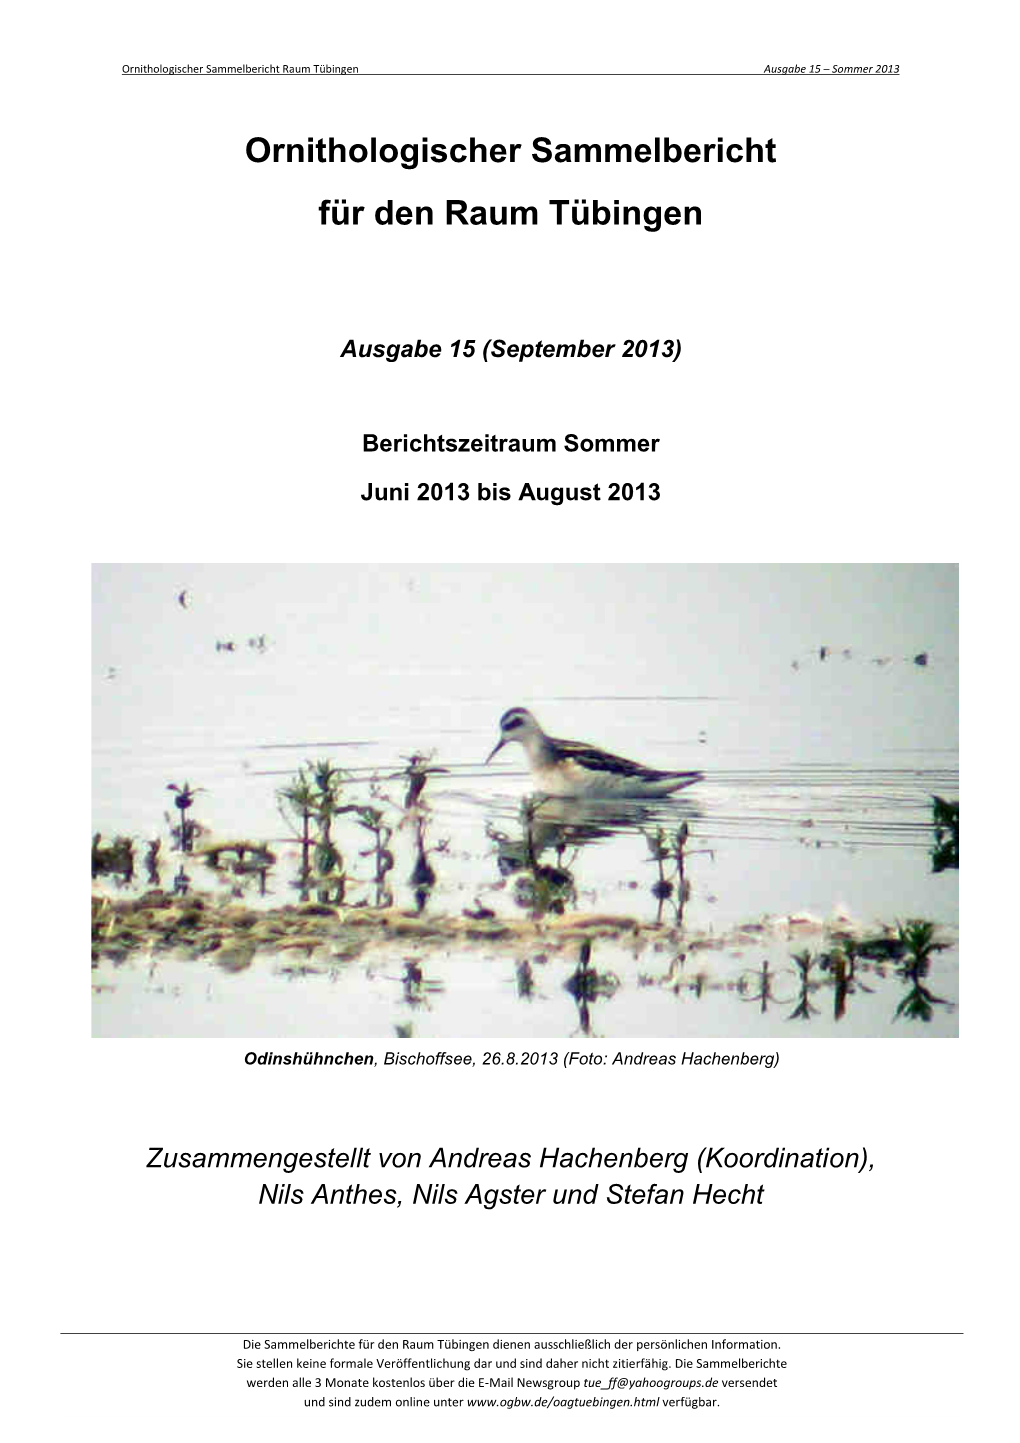 Ornithologischer Sammelbericht Für Den Raum Tübingen